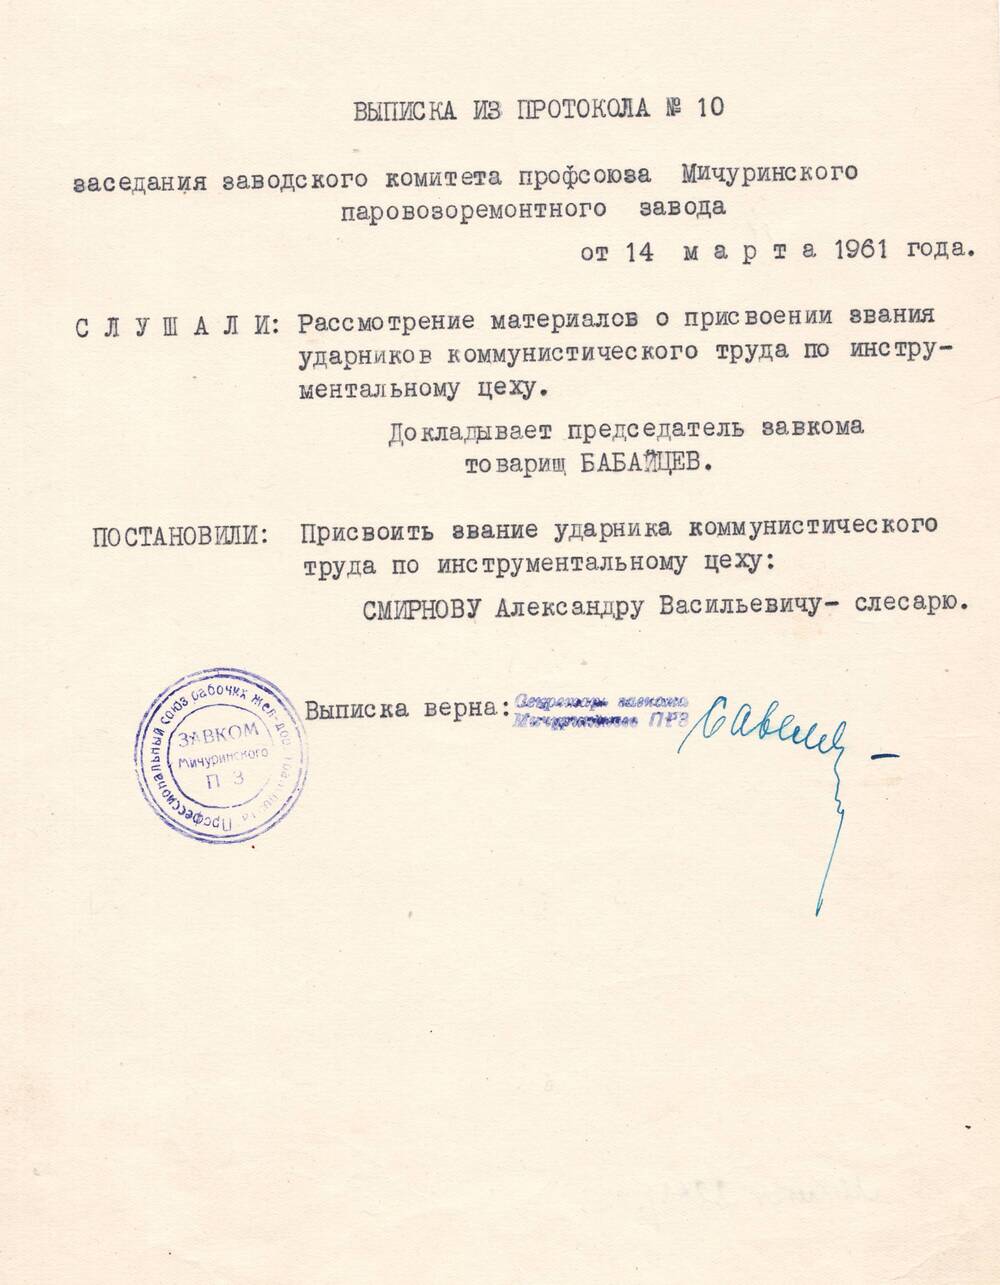 Выписка из протокола №10 заседания заводского комитета профсоюза Мичуринского паровозоремонтного завода от 14 марта 1961 года